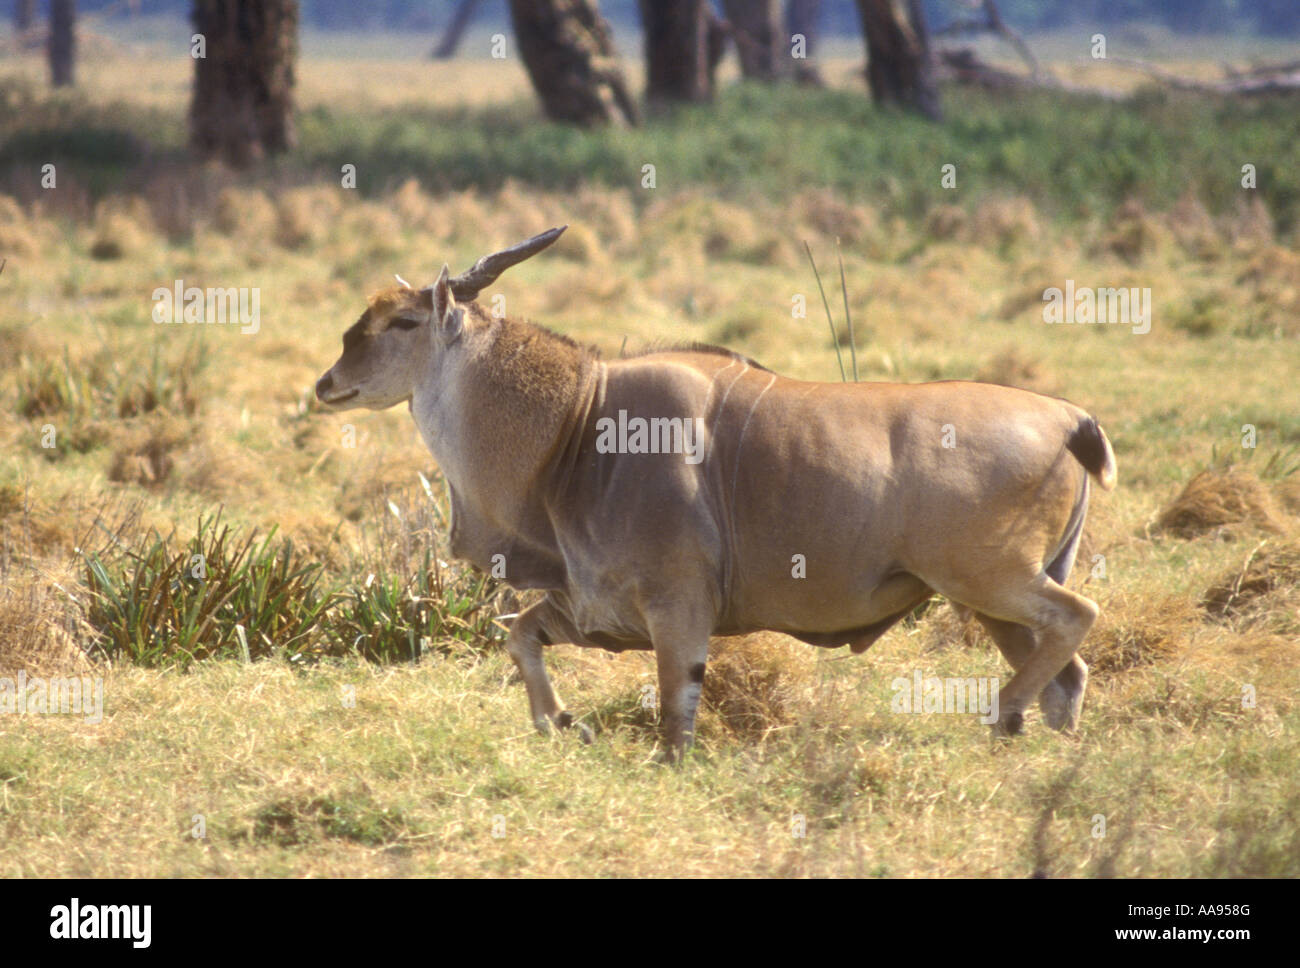 Profil-Seitenansicht des männlichen Eland die größte aller afrikanischen Antilopen in Ngorongoro Krater Tansania Ostafrika Stockfoto